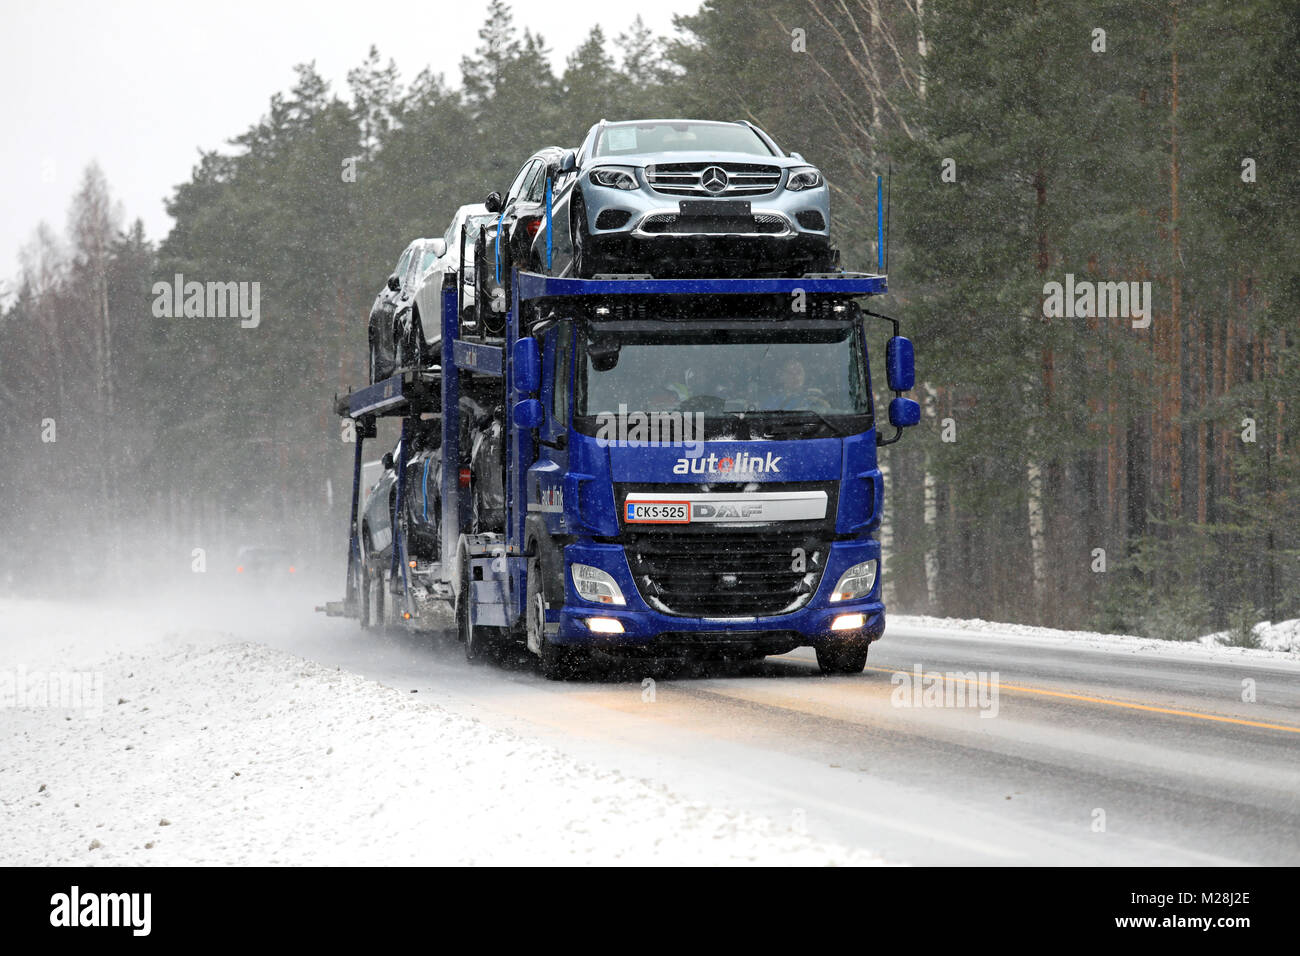 SALO, Finlandia - 3 febbraio 2018: DAF CF auto vettore di Autolink trasporta il nuovo Mercedes-Benz Cars lungo la strada in nevischio e neve. Foto Stock